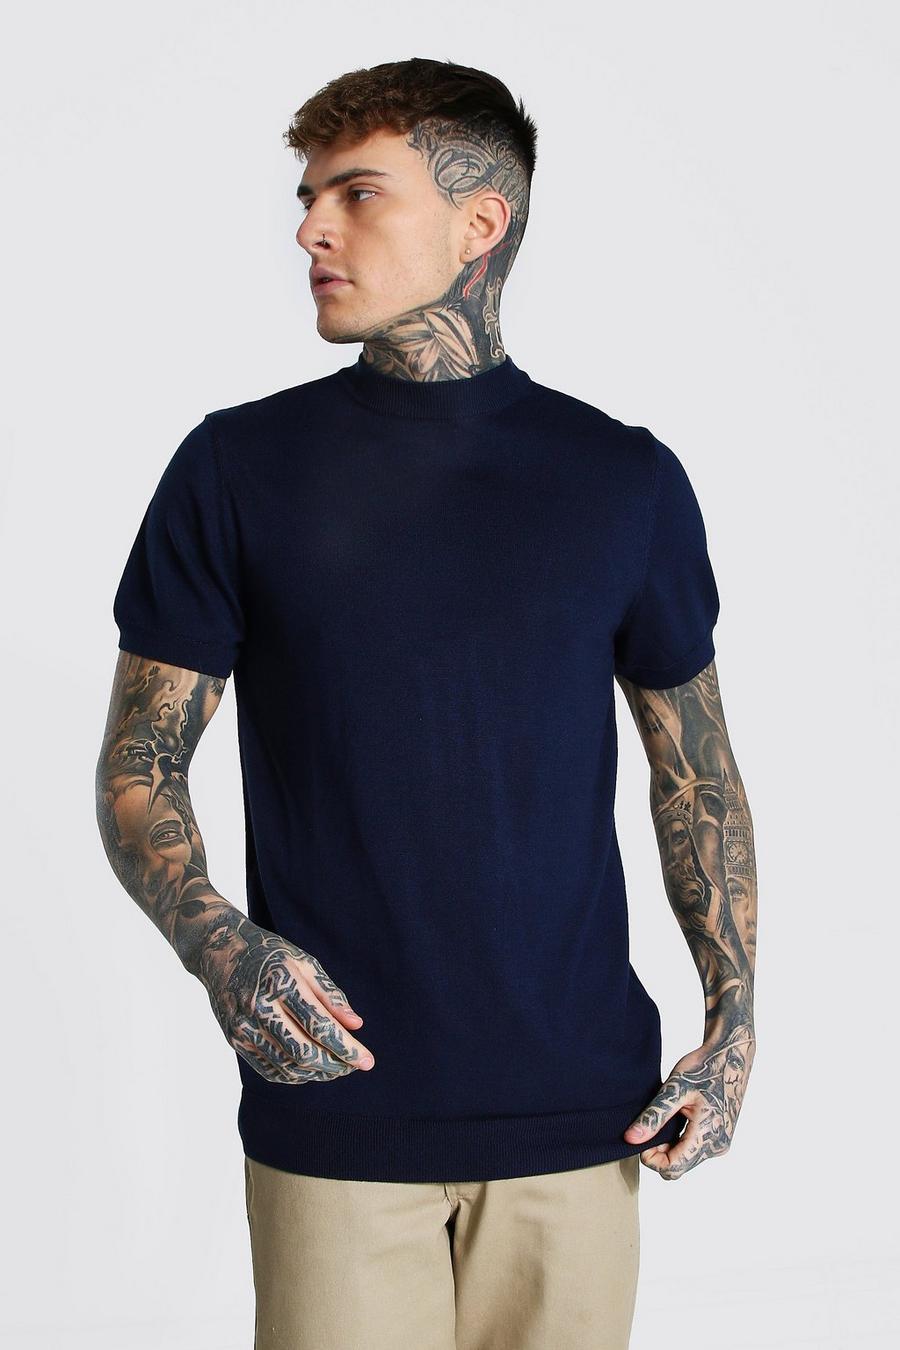 Las mejores ofertas en Cuello alto manga corta Camisetas para Hombres